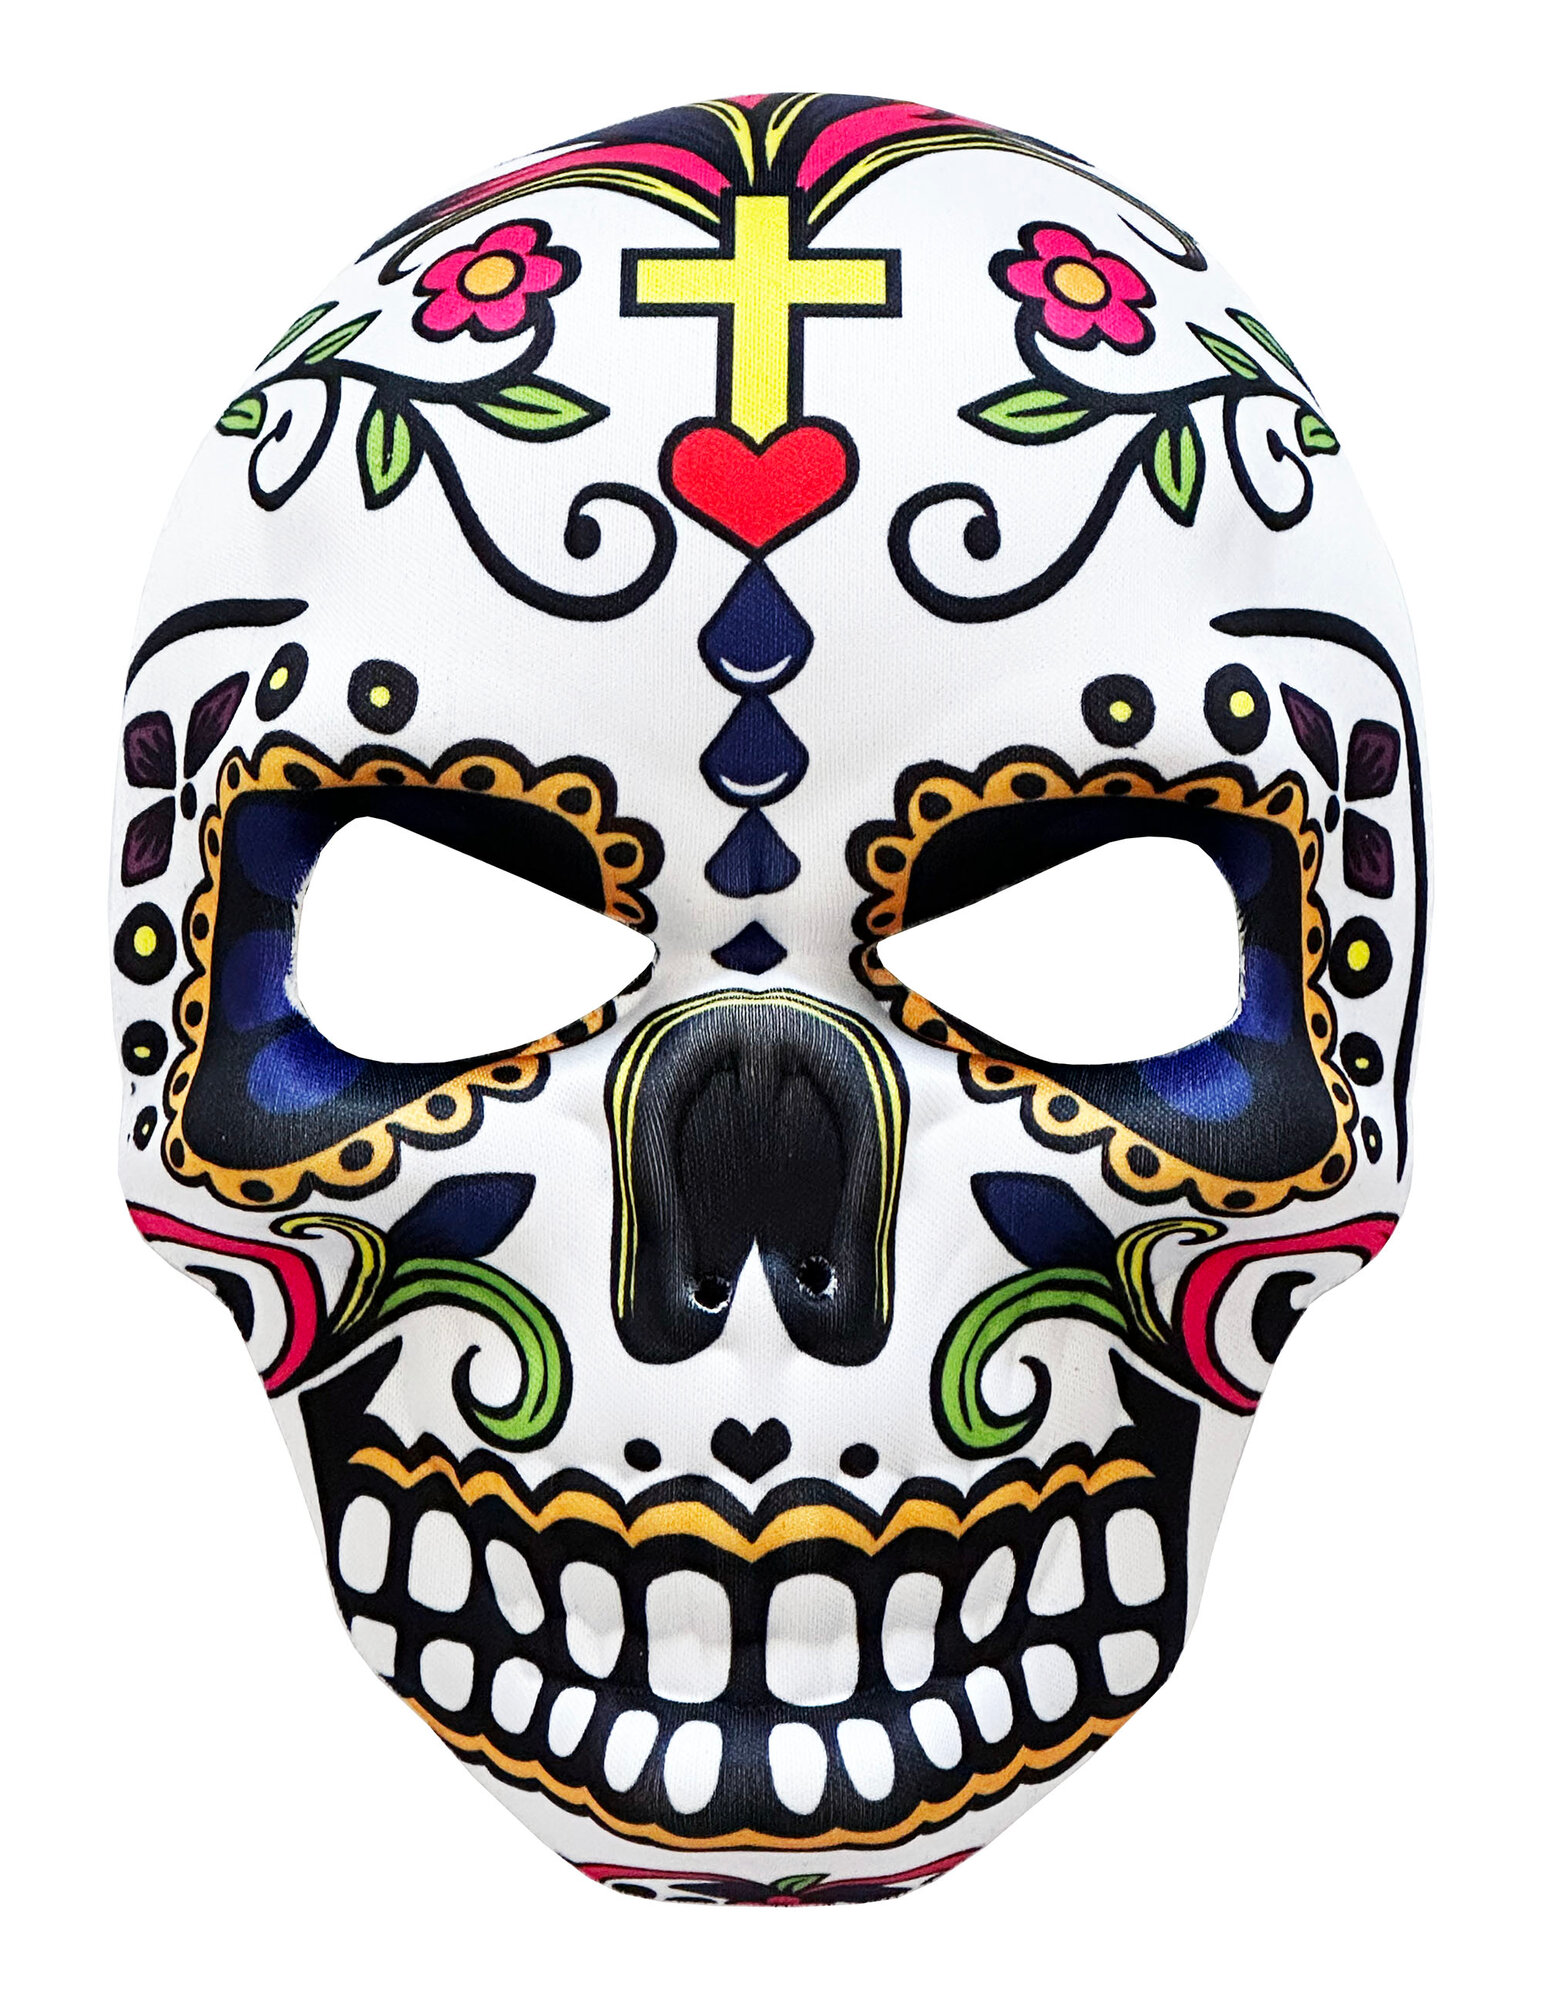 Карнавальная маска Санта Муэрте из ПВХ (крест) / Маска День мертвых (Dia de los Muertos) / Маска для вечеринки Santa Muerte (АL)